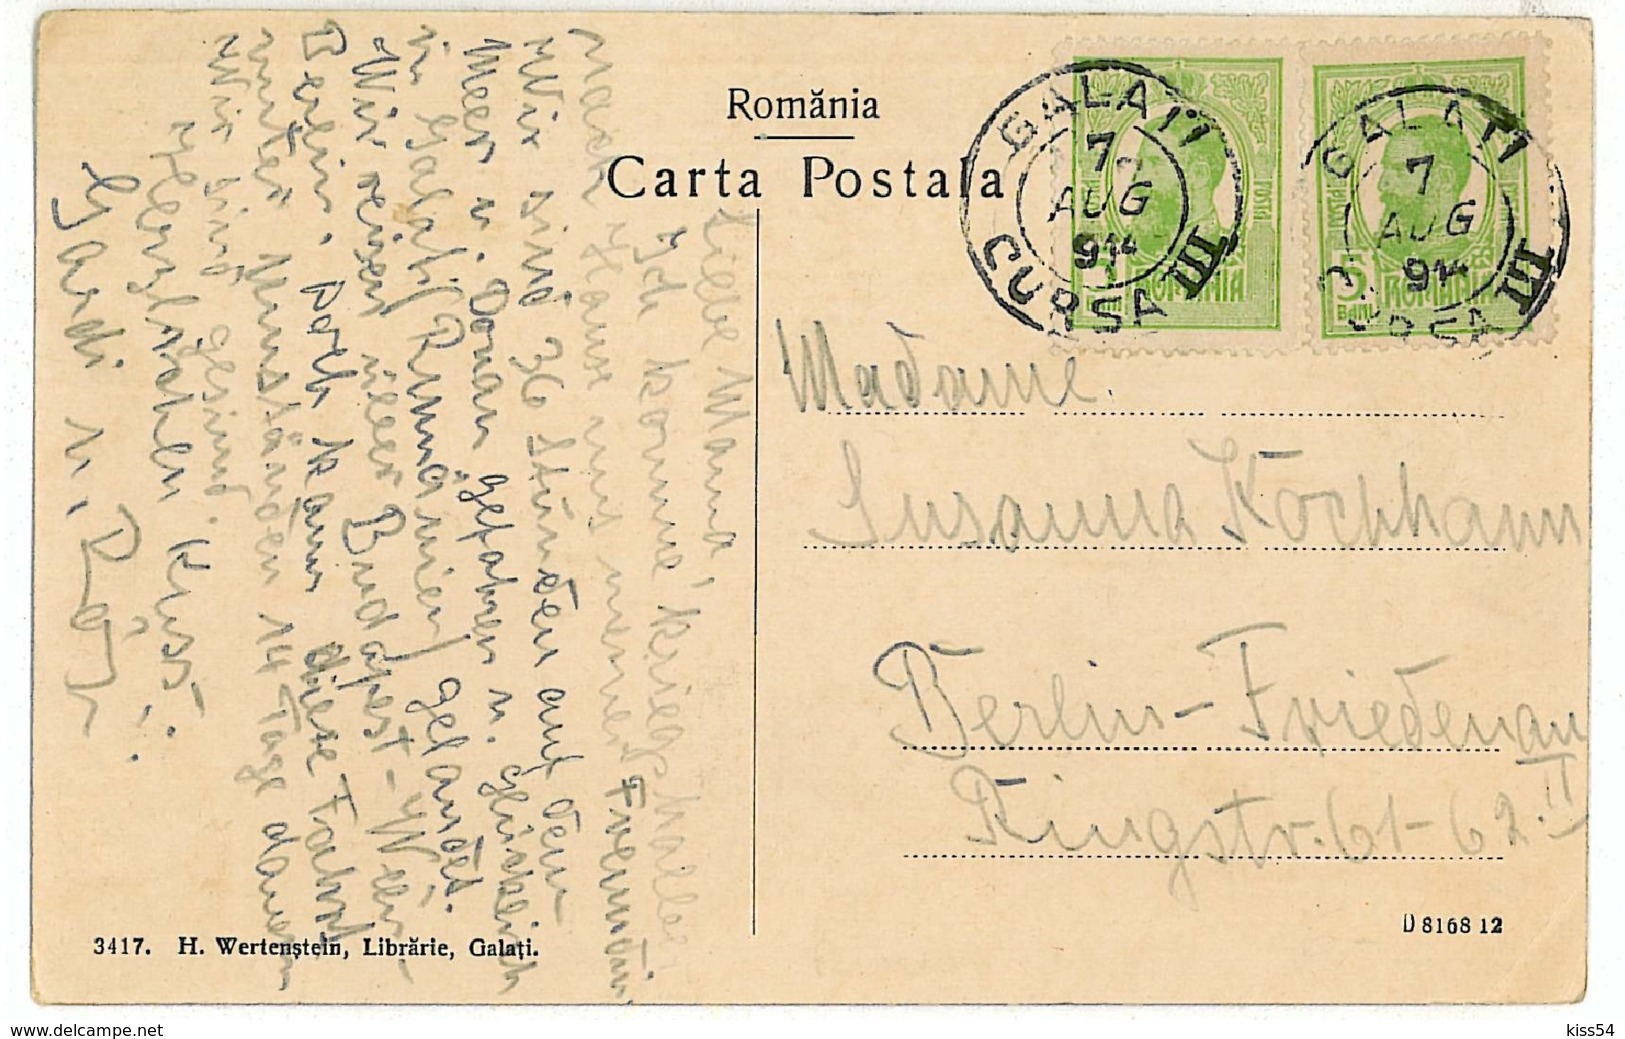 RO 10 - 6916 GALATI, Romania, Debarcaderul - Old Postcard - Used - 1914 - Romania